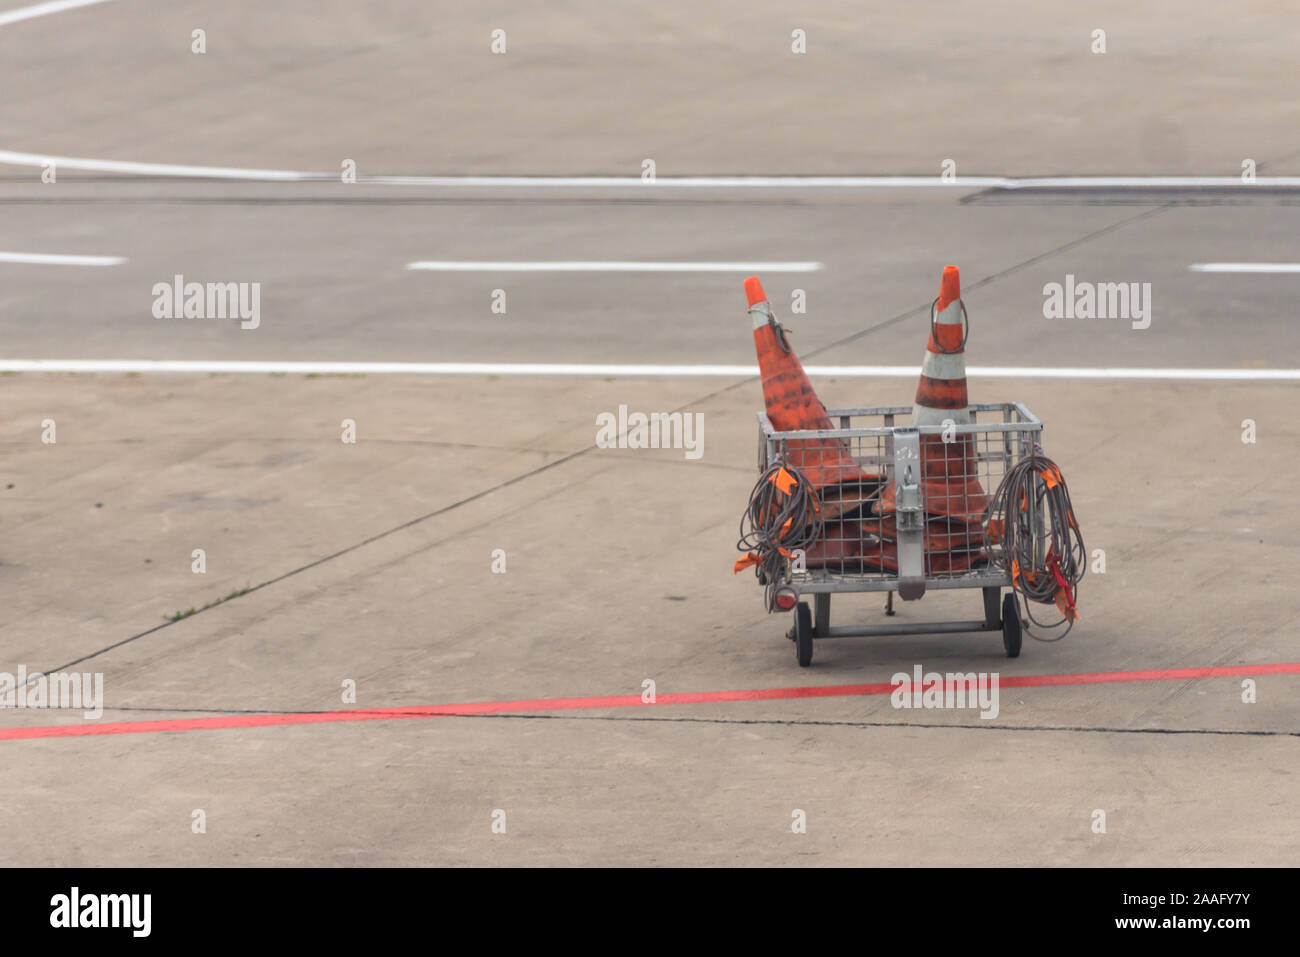 Aeroporto Vnukovo, Mosca. Carrello con i coni sulla pista di rullaggio. Foto Stock